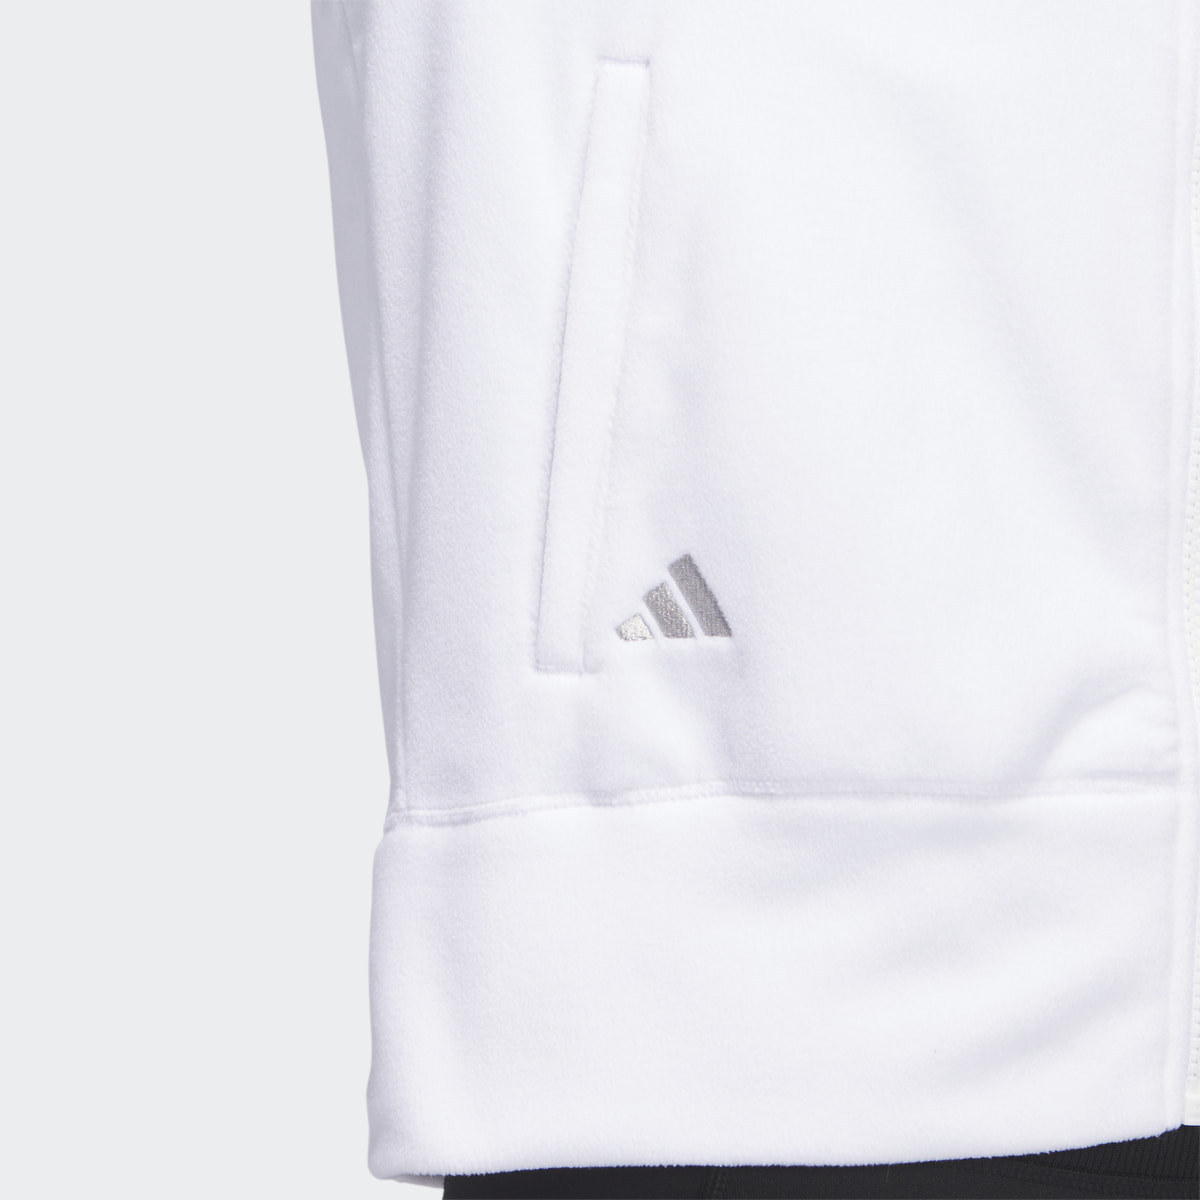 Adidas Full-Zip Fleece Jacket. 7